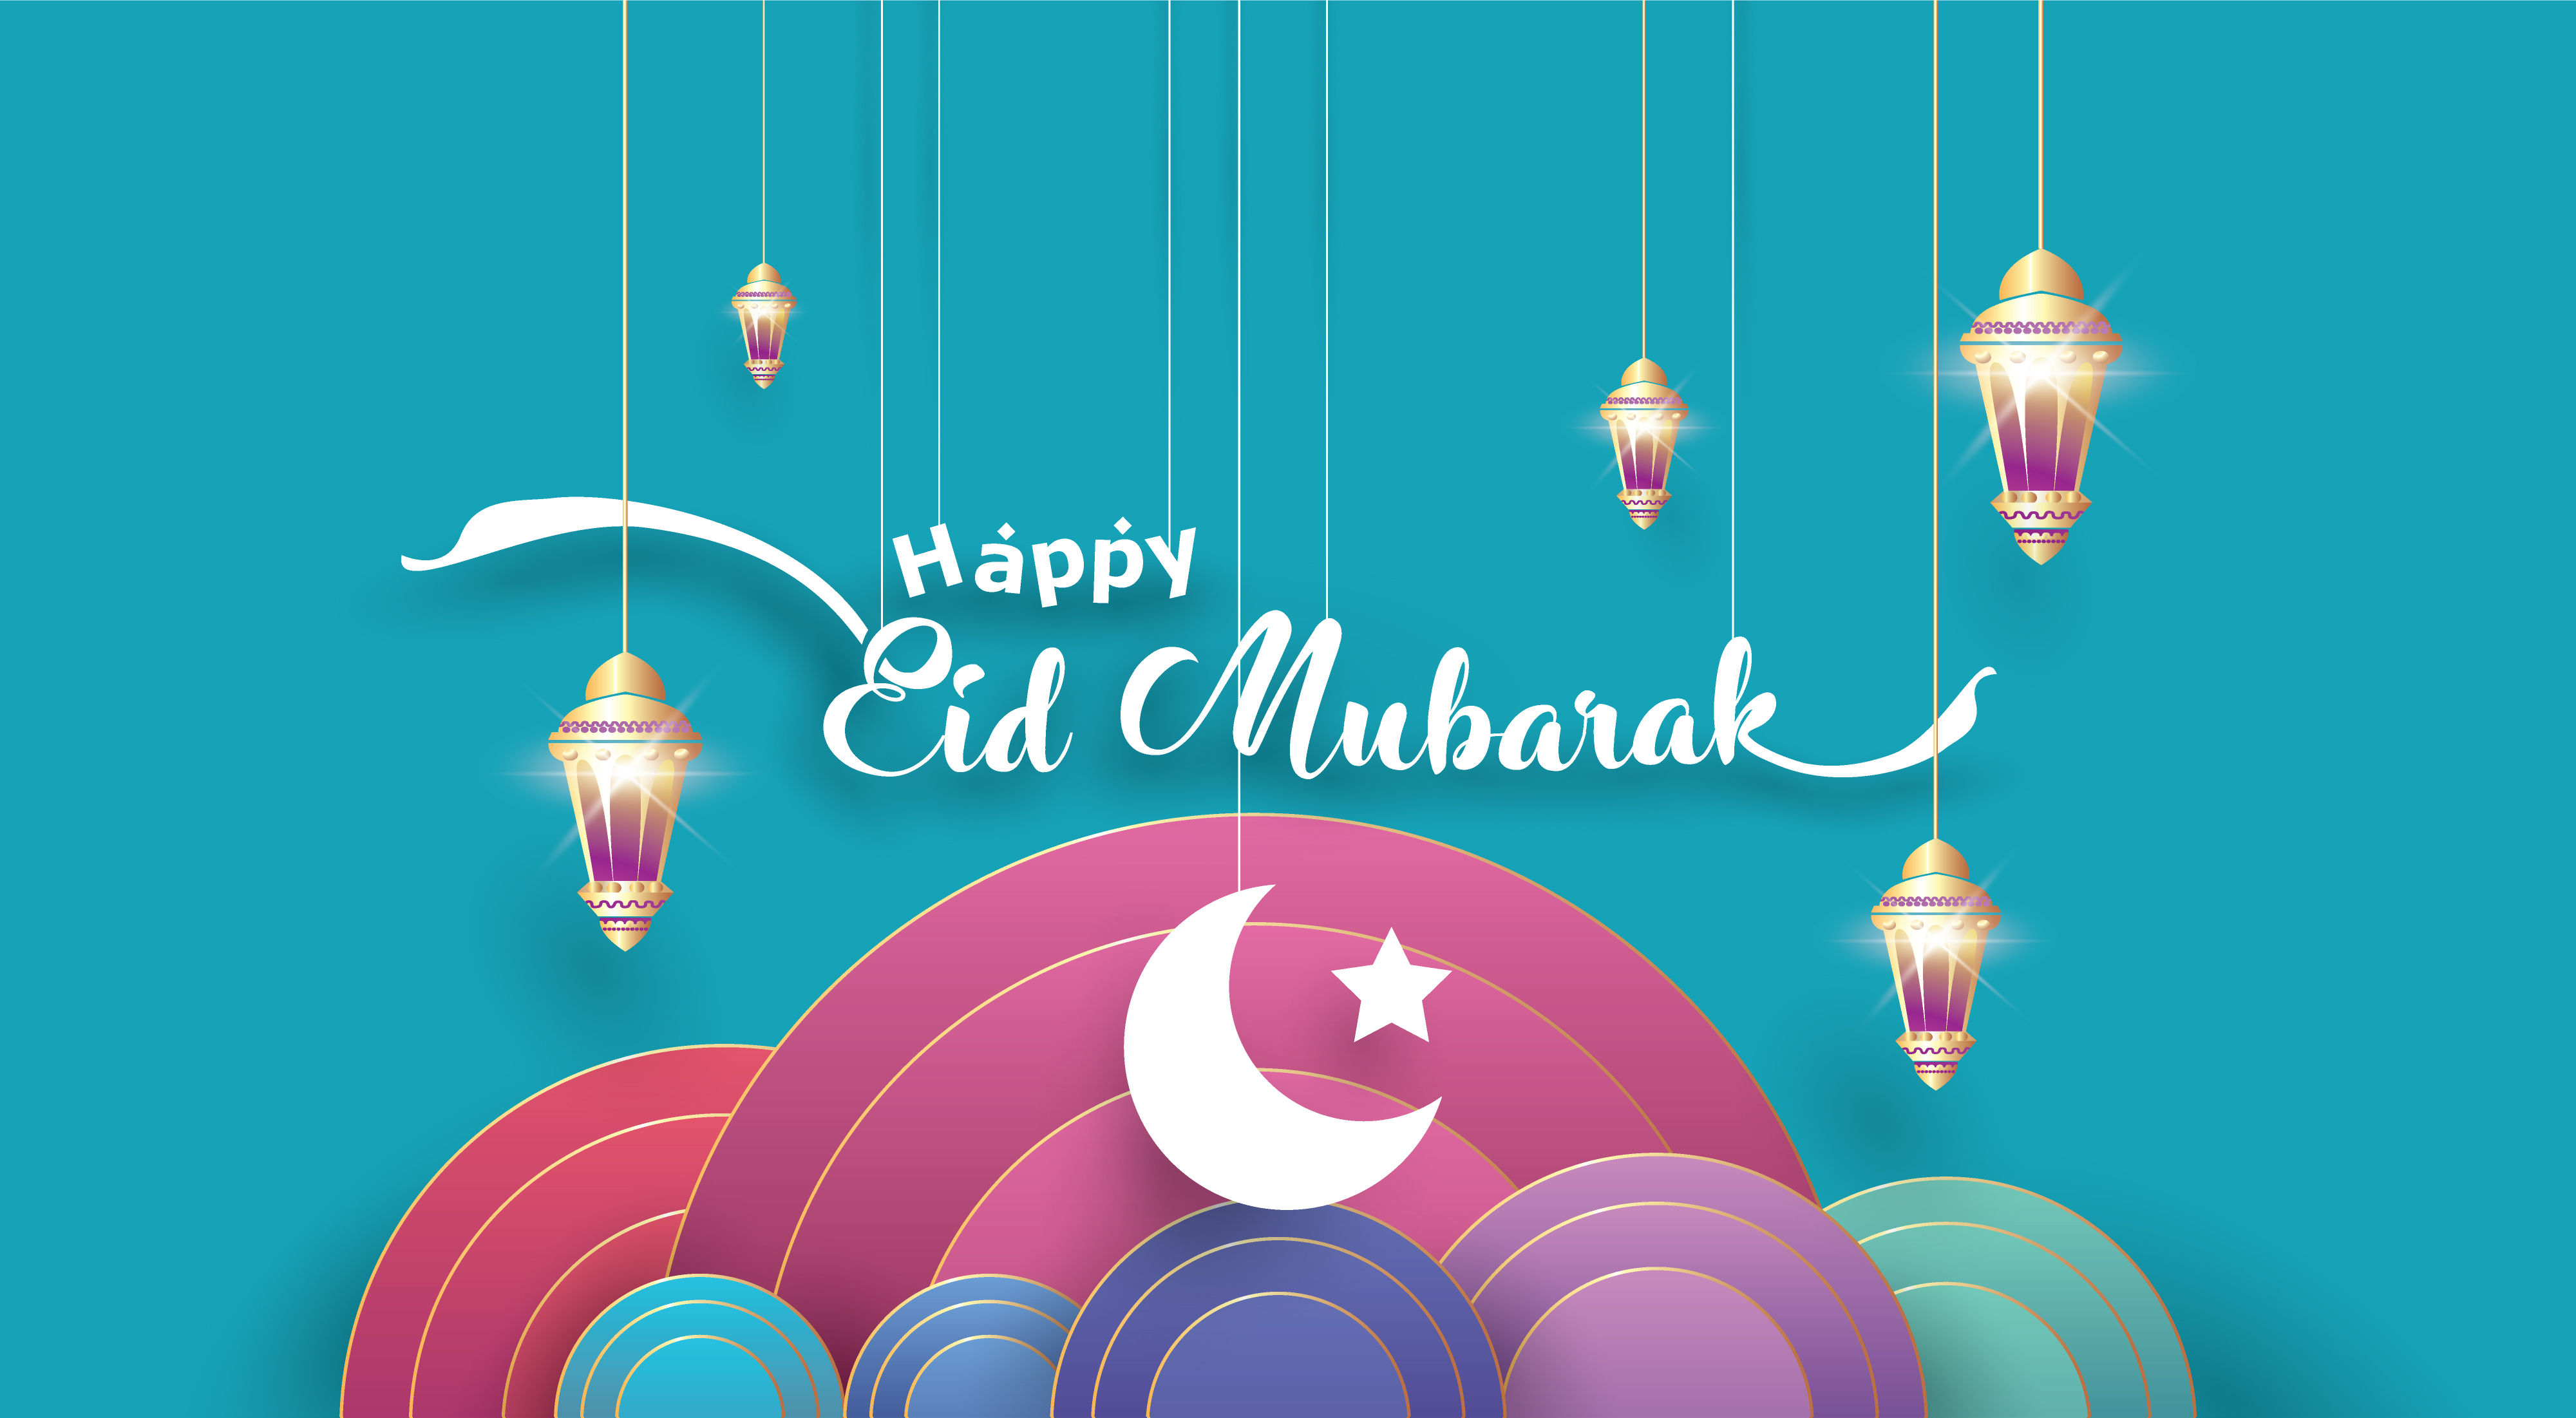 Eid Mubarak greetings message